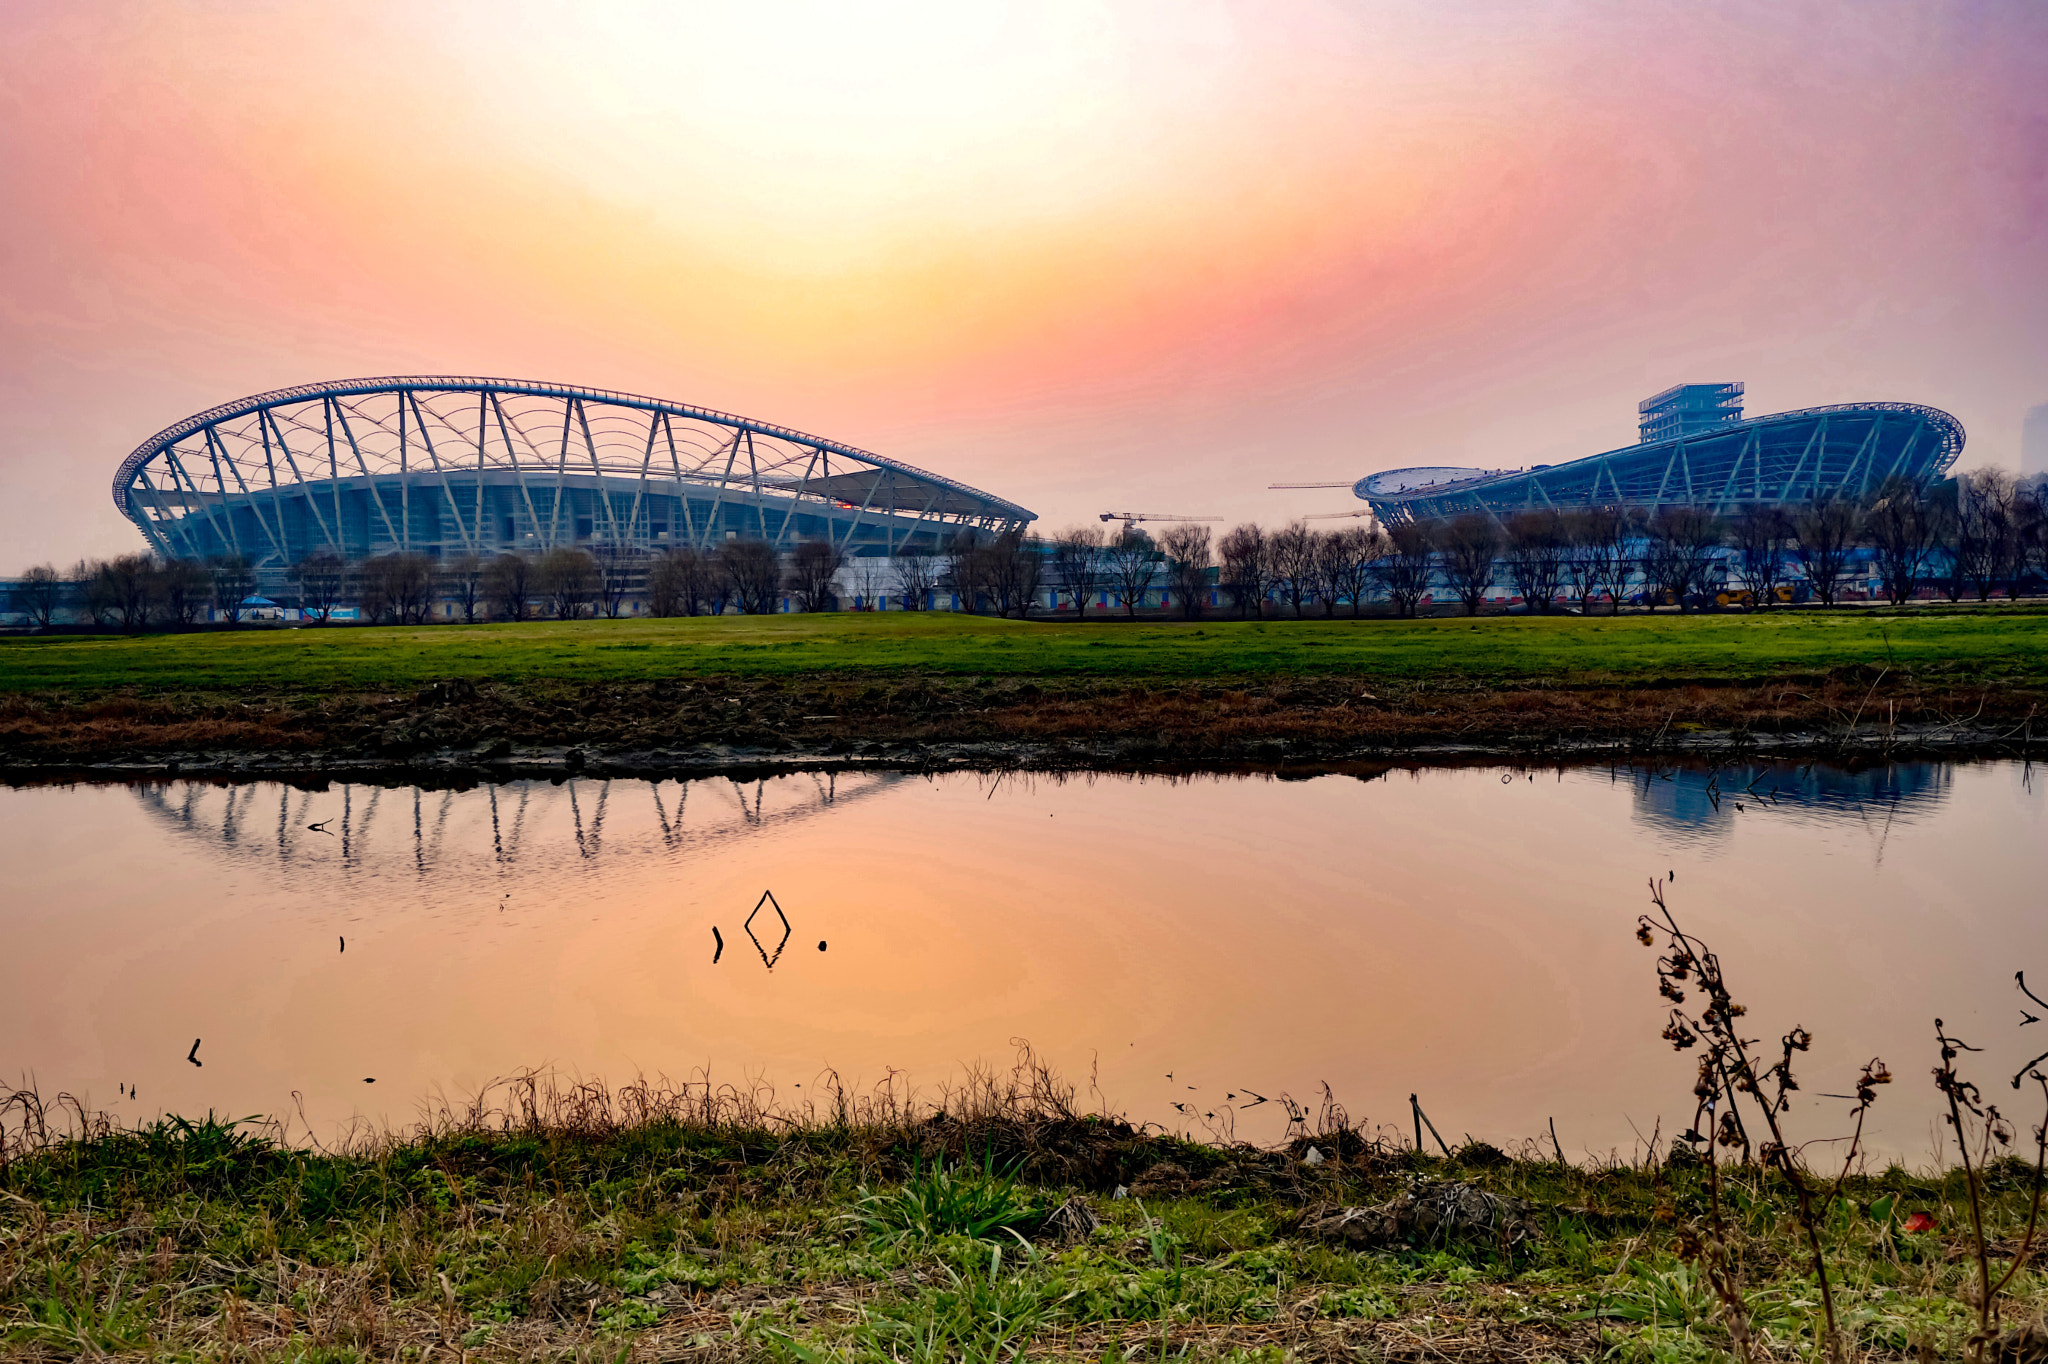 Sony a6300 + Sony Vario-Tessar T* FE 16-35mm F4 ZA OSS sample photo. Stadium of suzhou industrial park.jpg photography